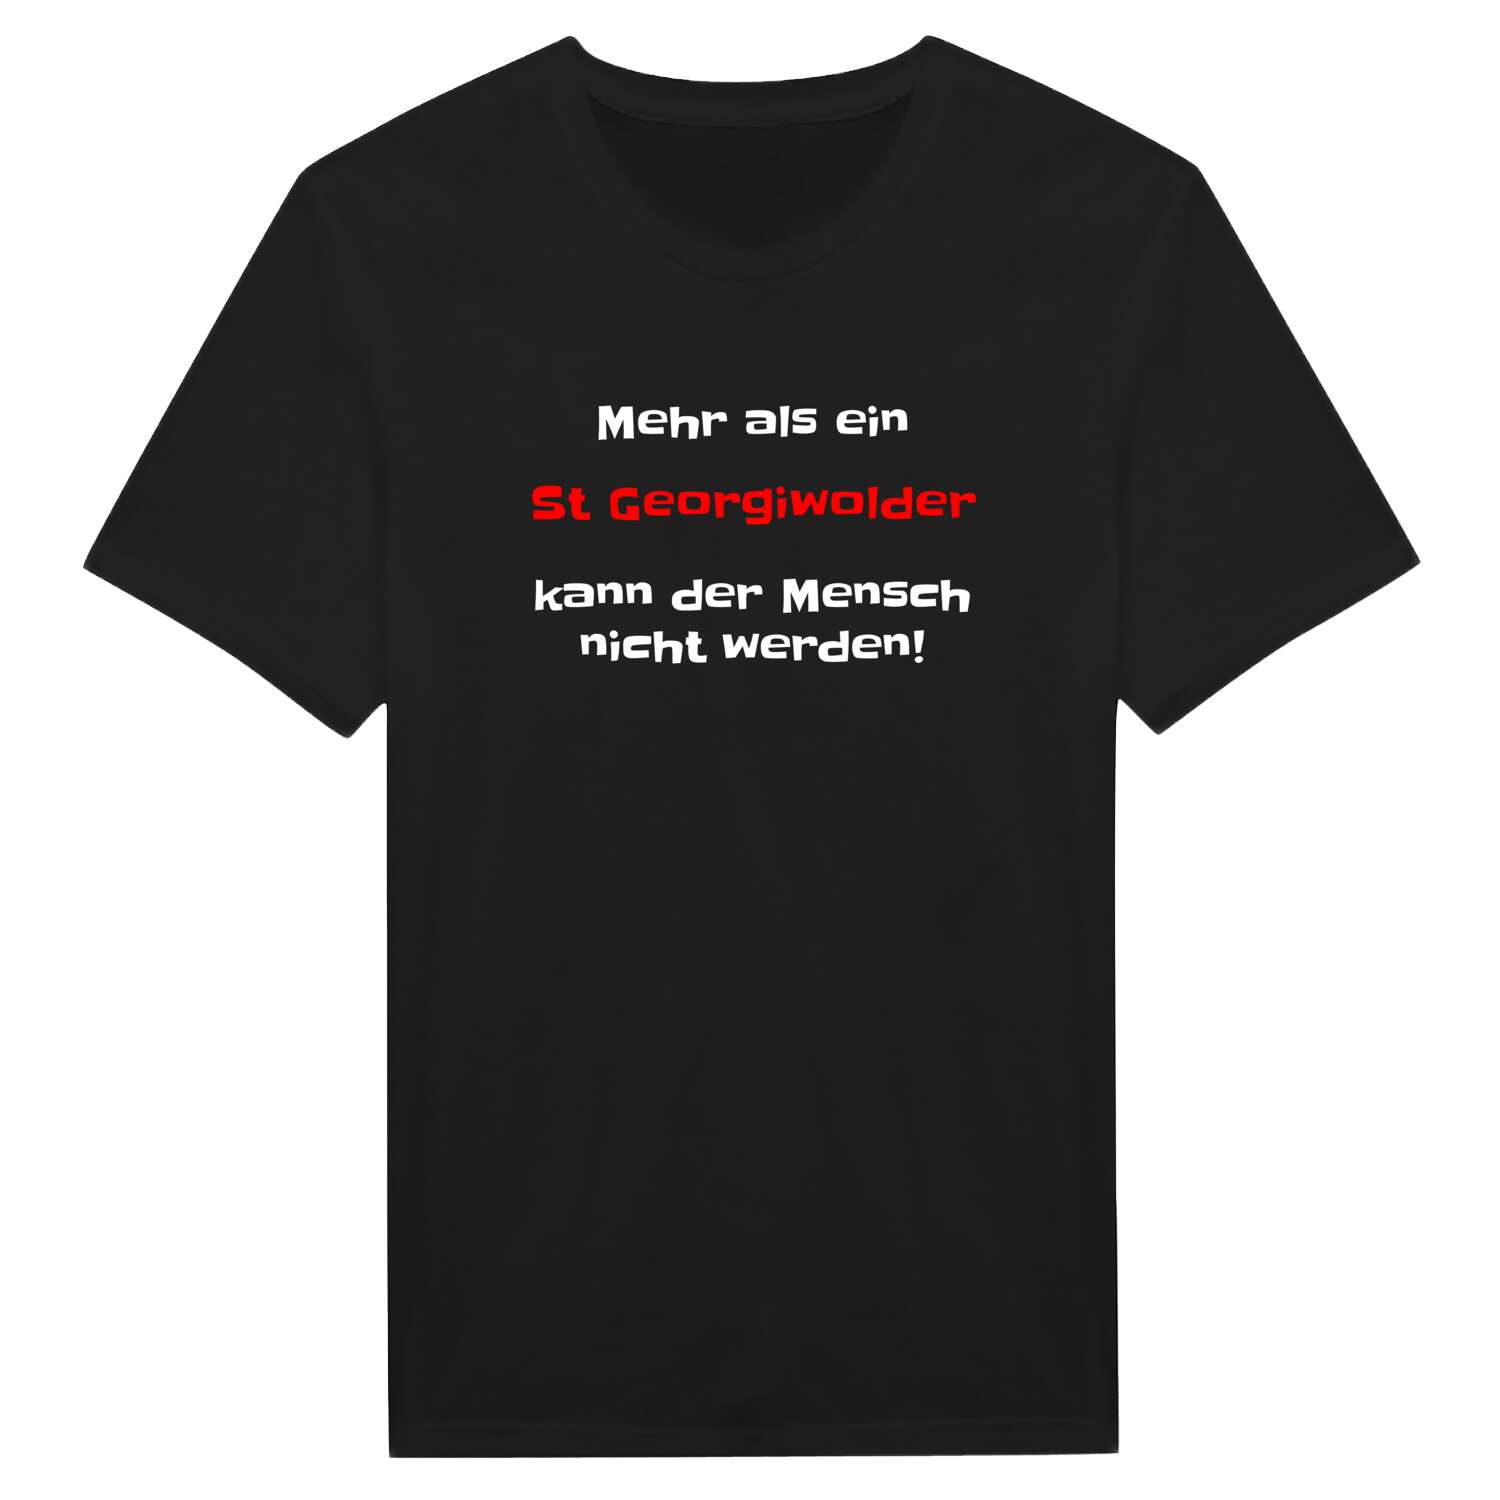 St Georgiwold T-Shirt »Mehr als ein«